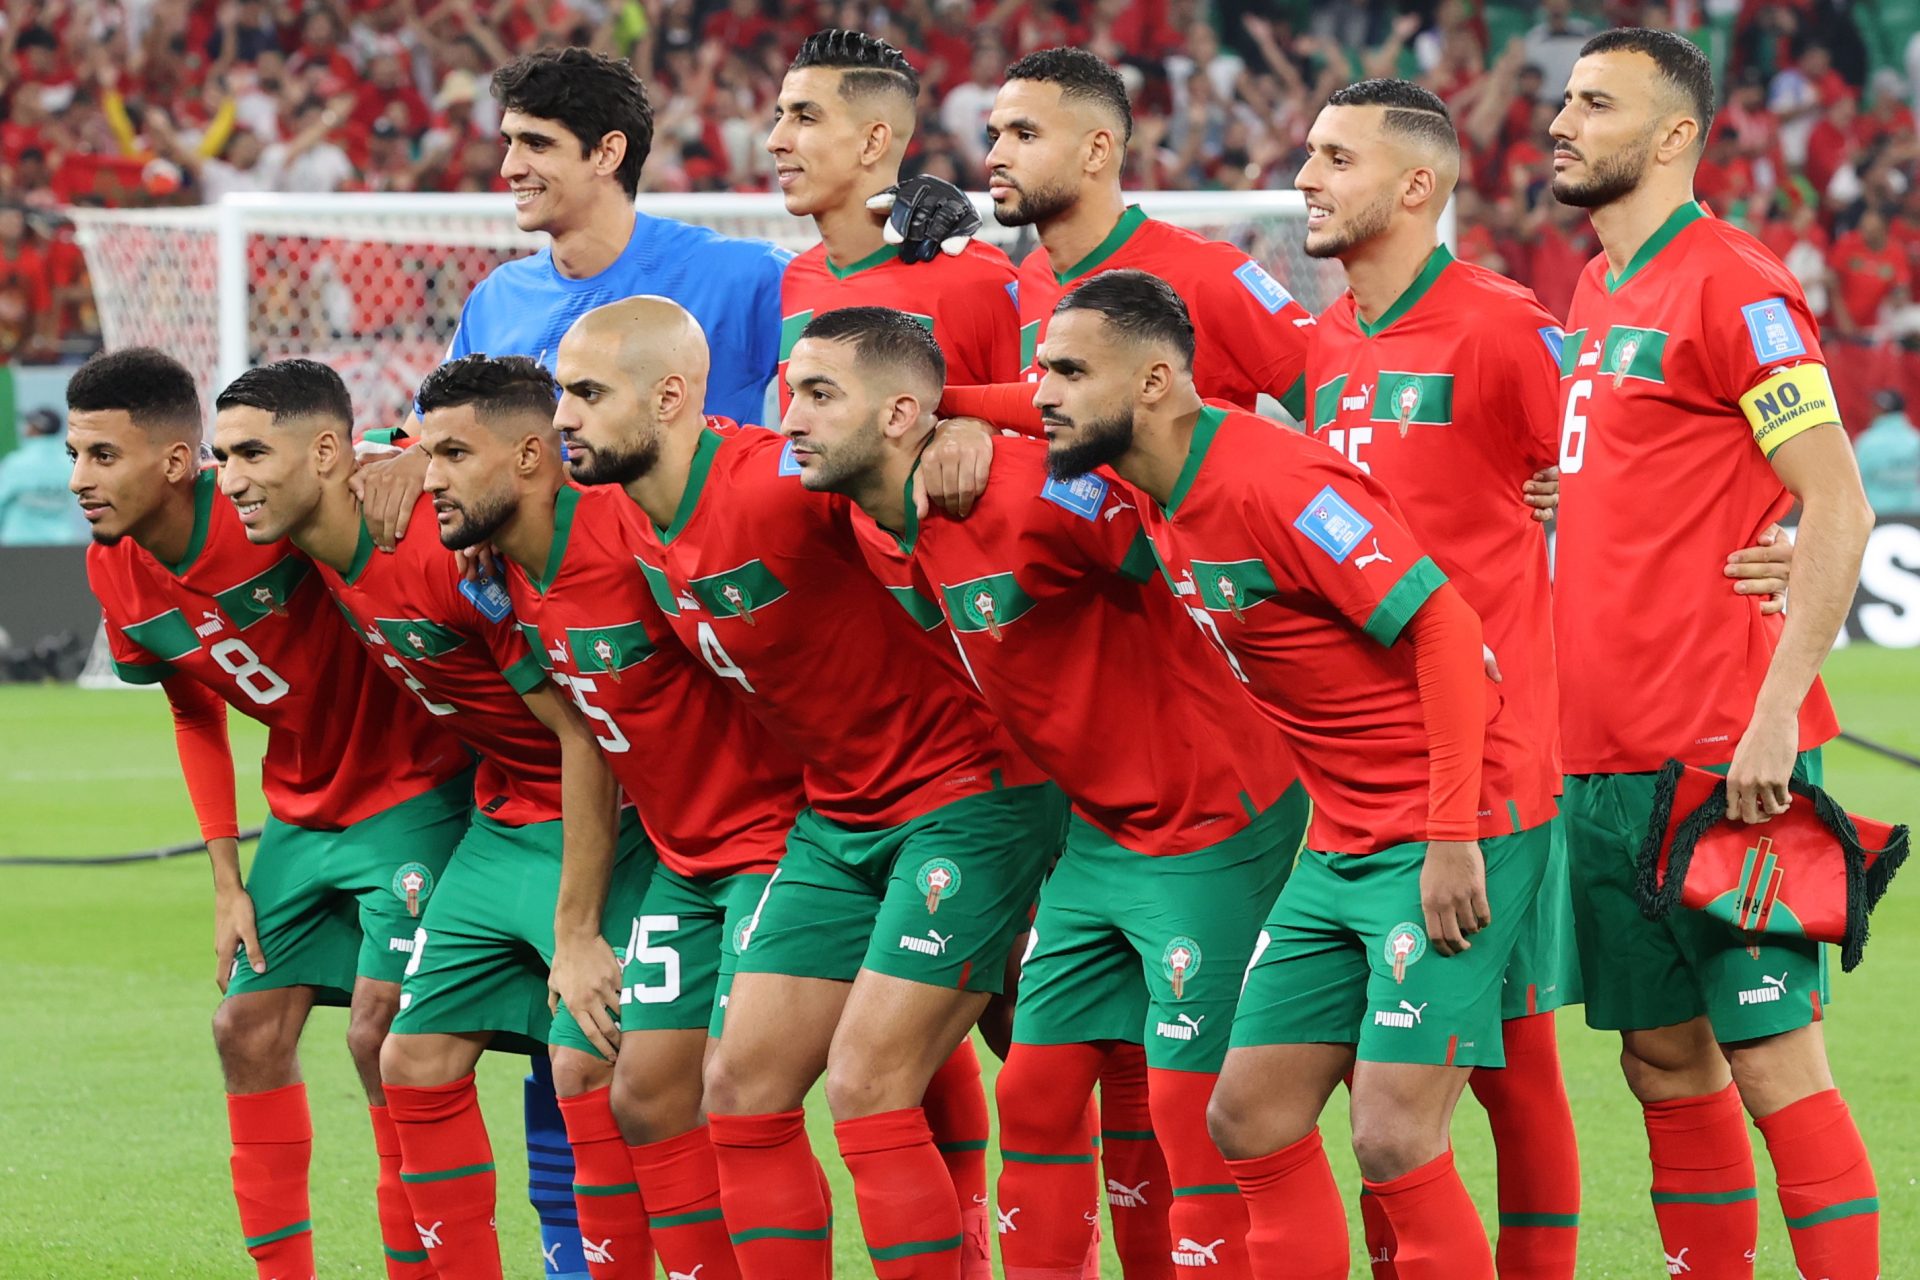 La irreductible Marruecos o la mejor defensa desde Alemania 2006